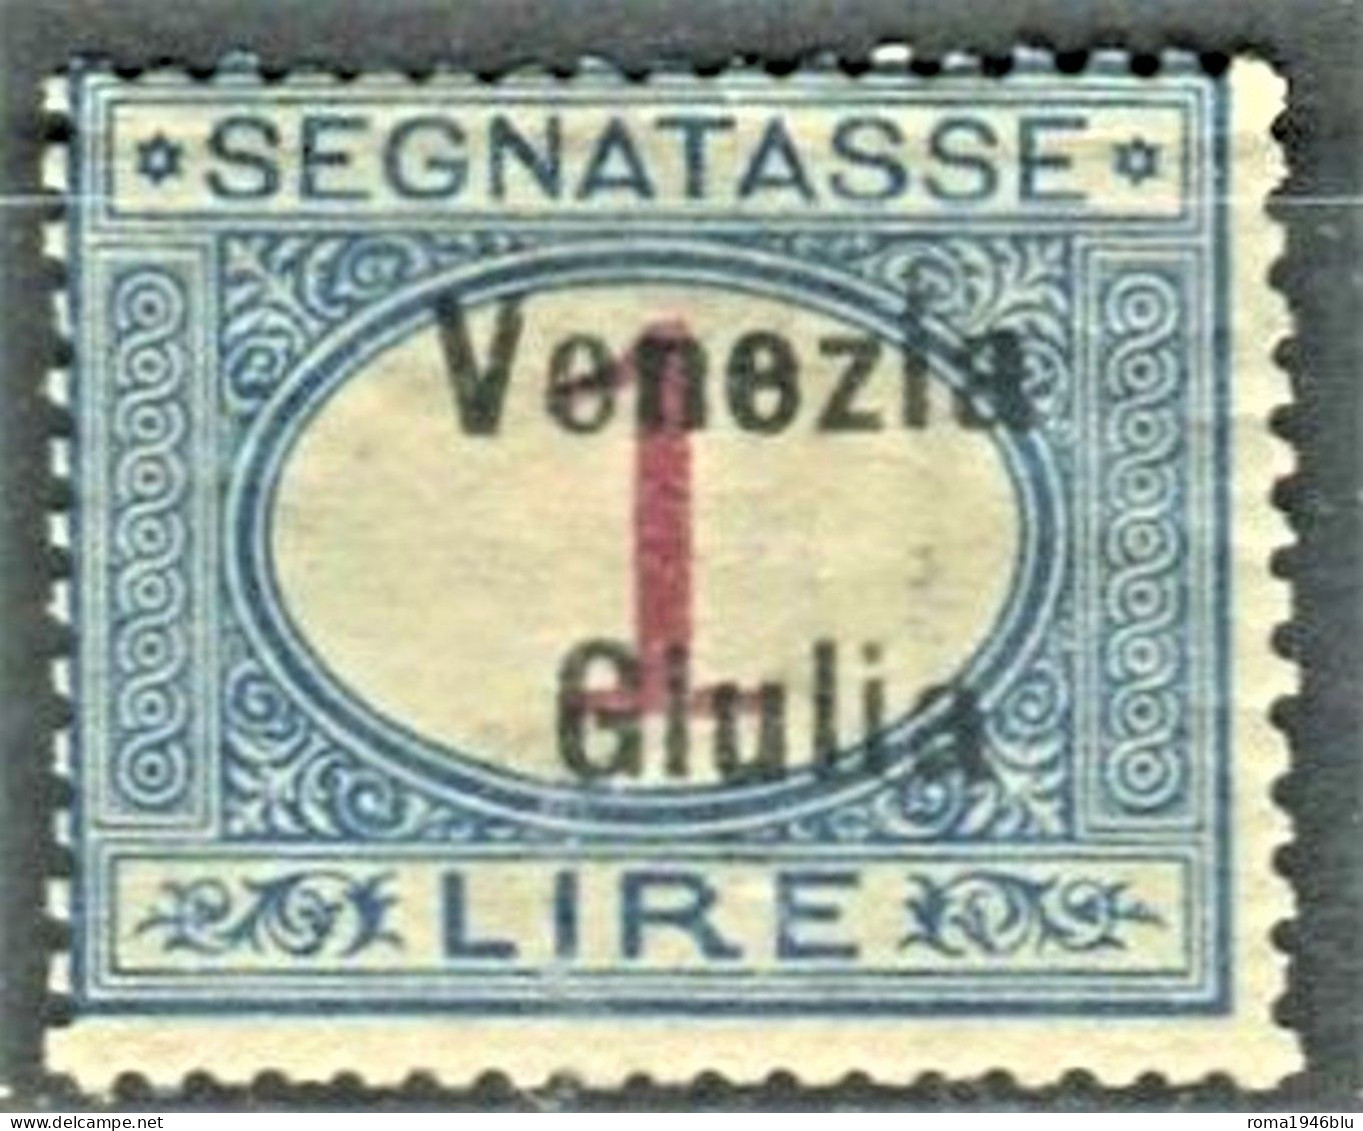 VENEZIA GIULIA 1918  SEGNATASSE 1 LIRA * GOMMA ORIGINALE FIRMATA - Vénétie Julienne